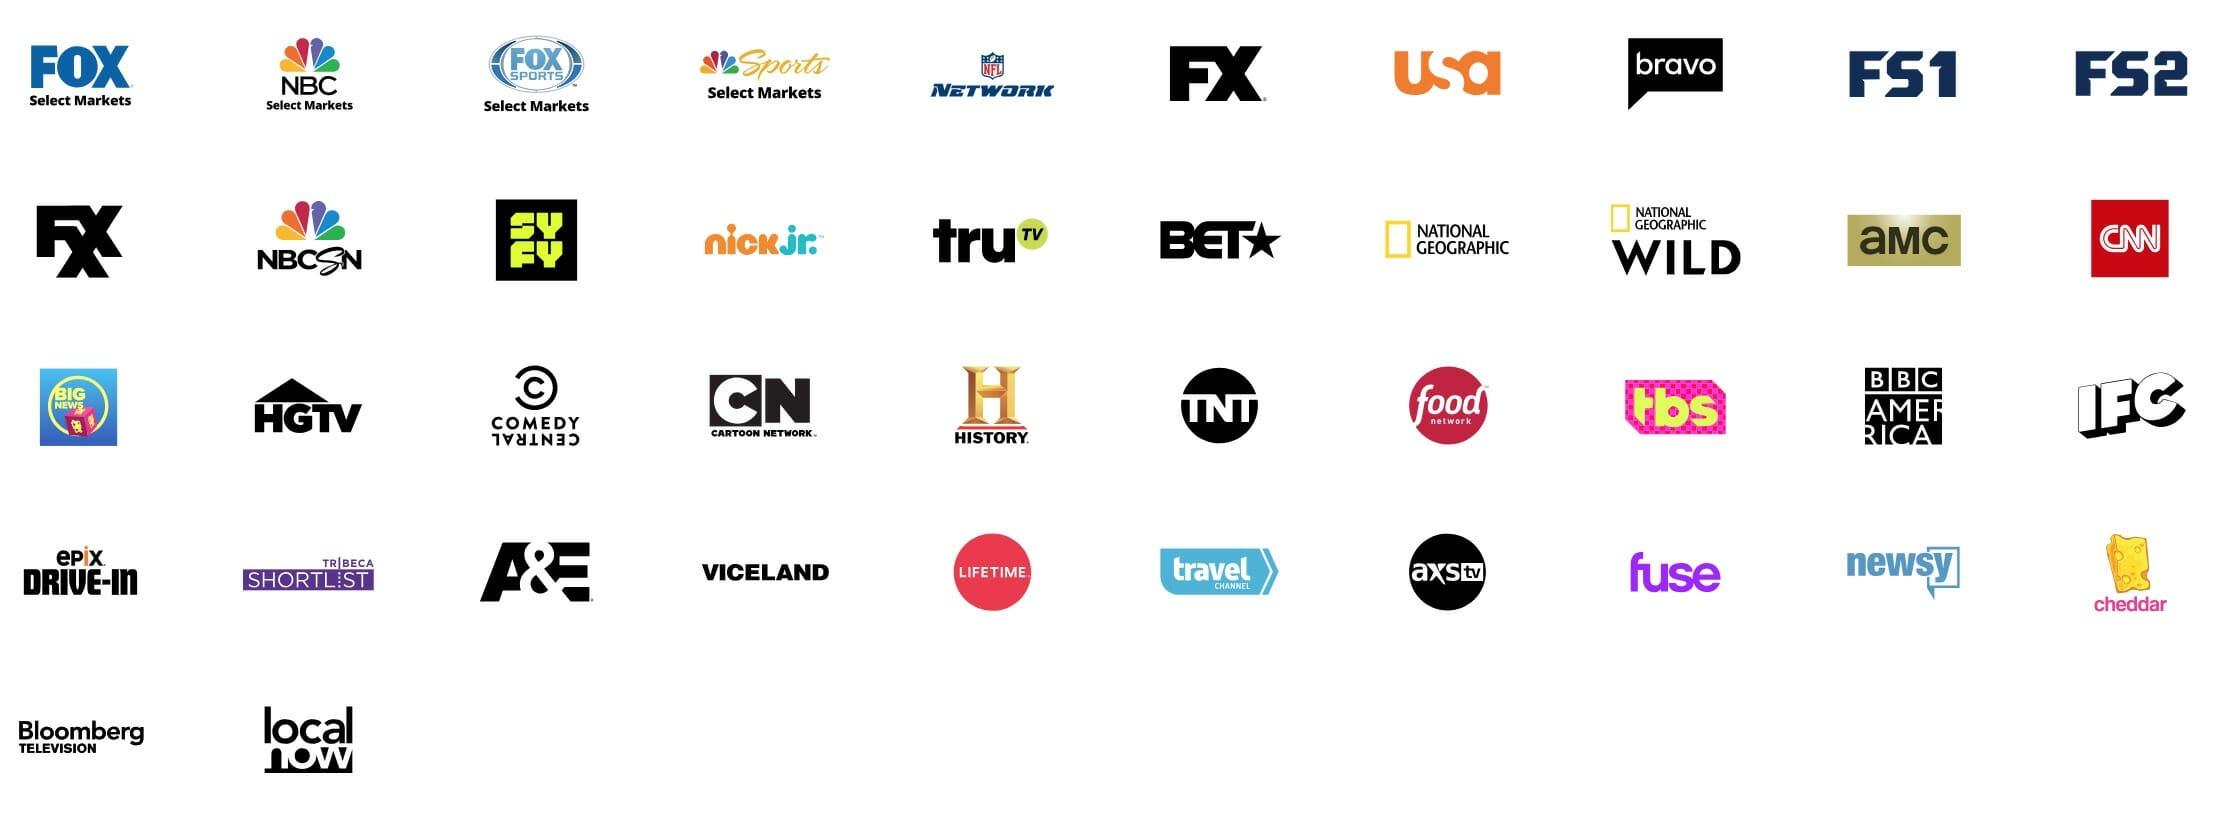 Blue TV Logo - Sling TV Channels: The Channel List for Sling Orange and Sling Blue